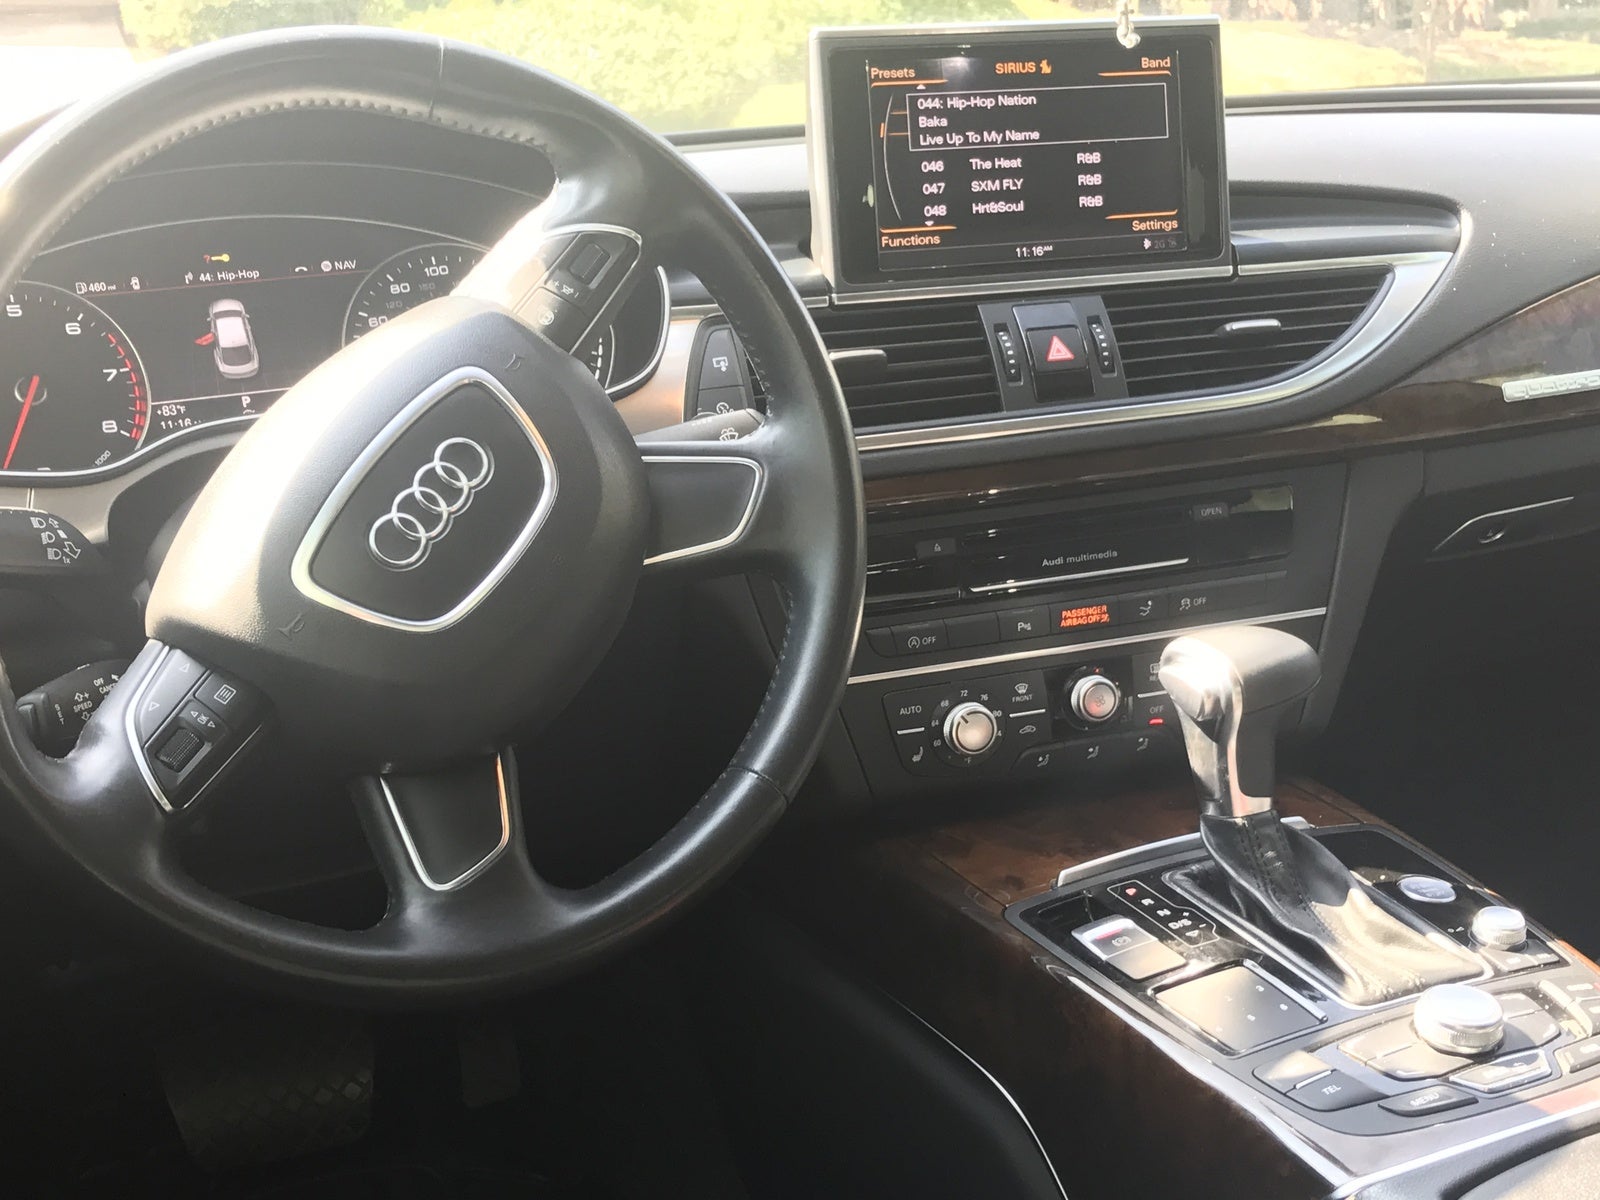 2013 Audi A7 Interior Pictures Cargurus